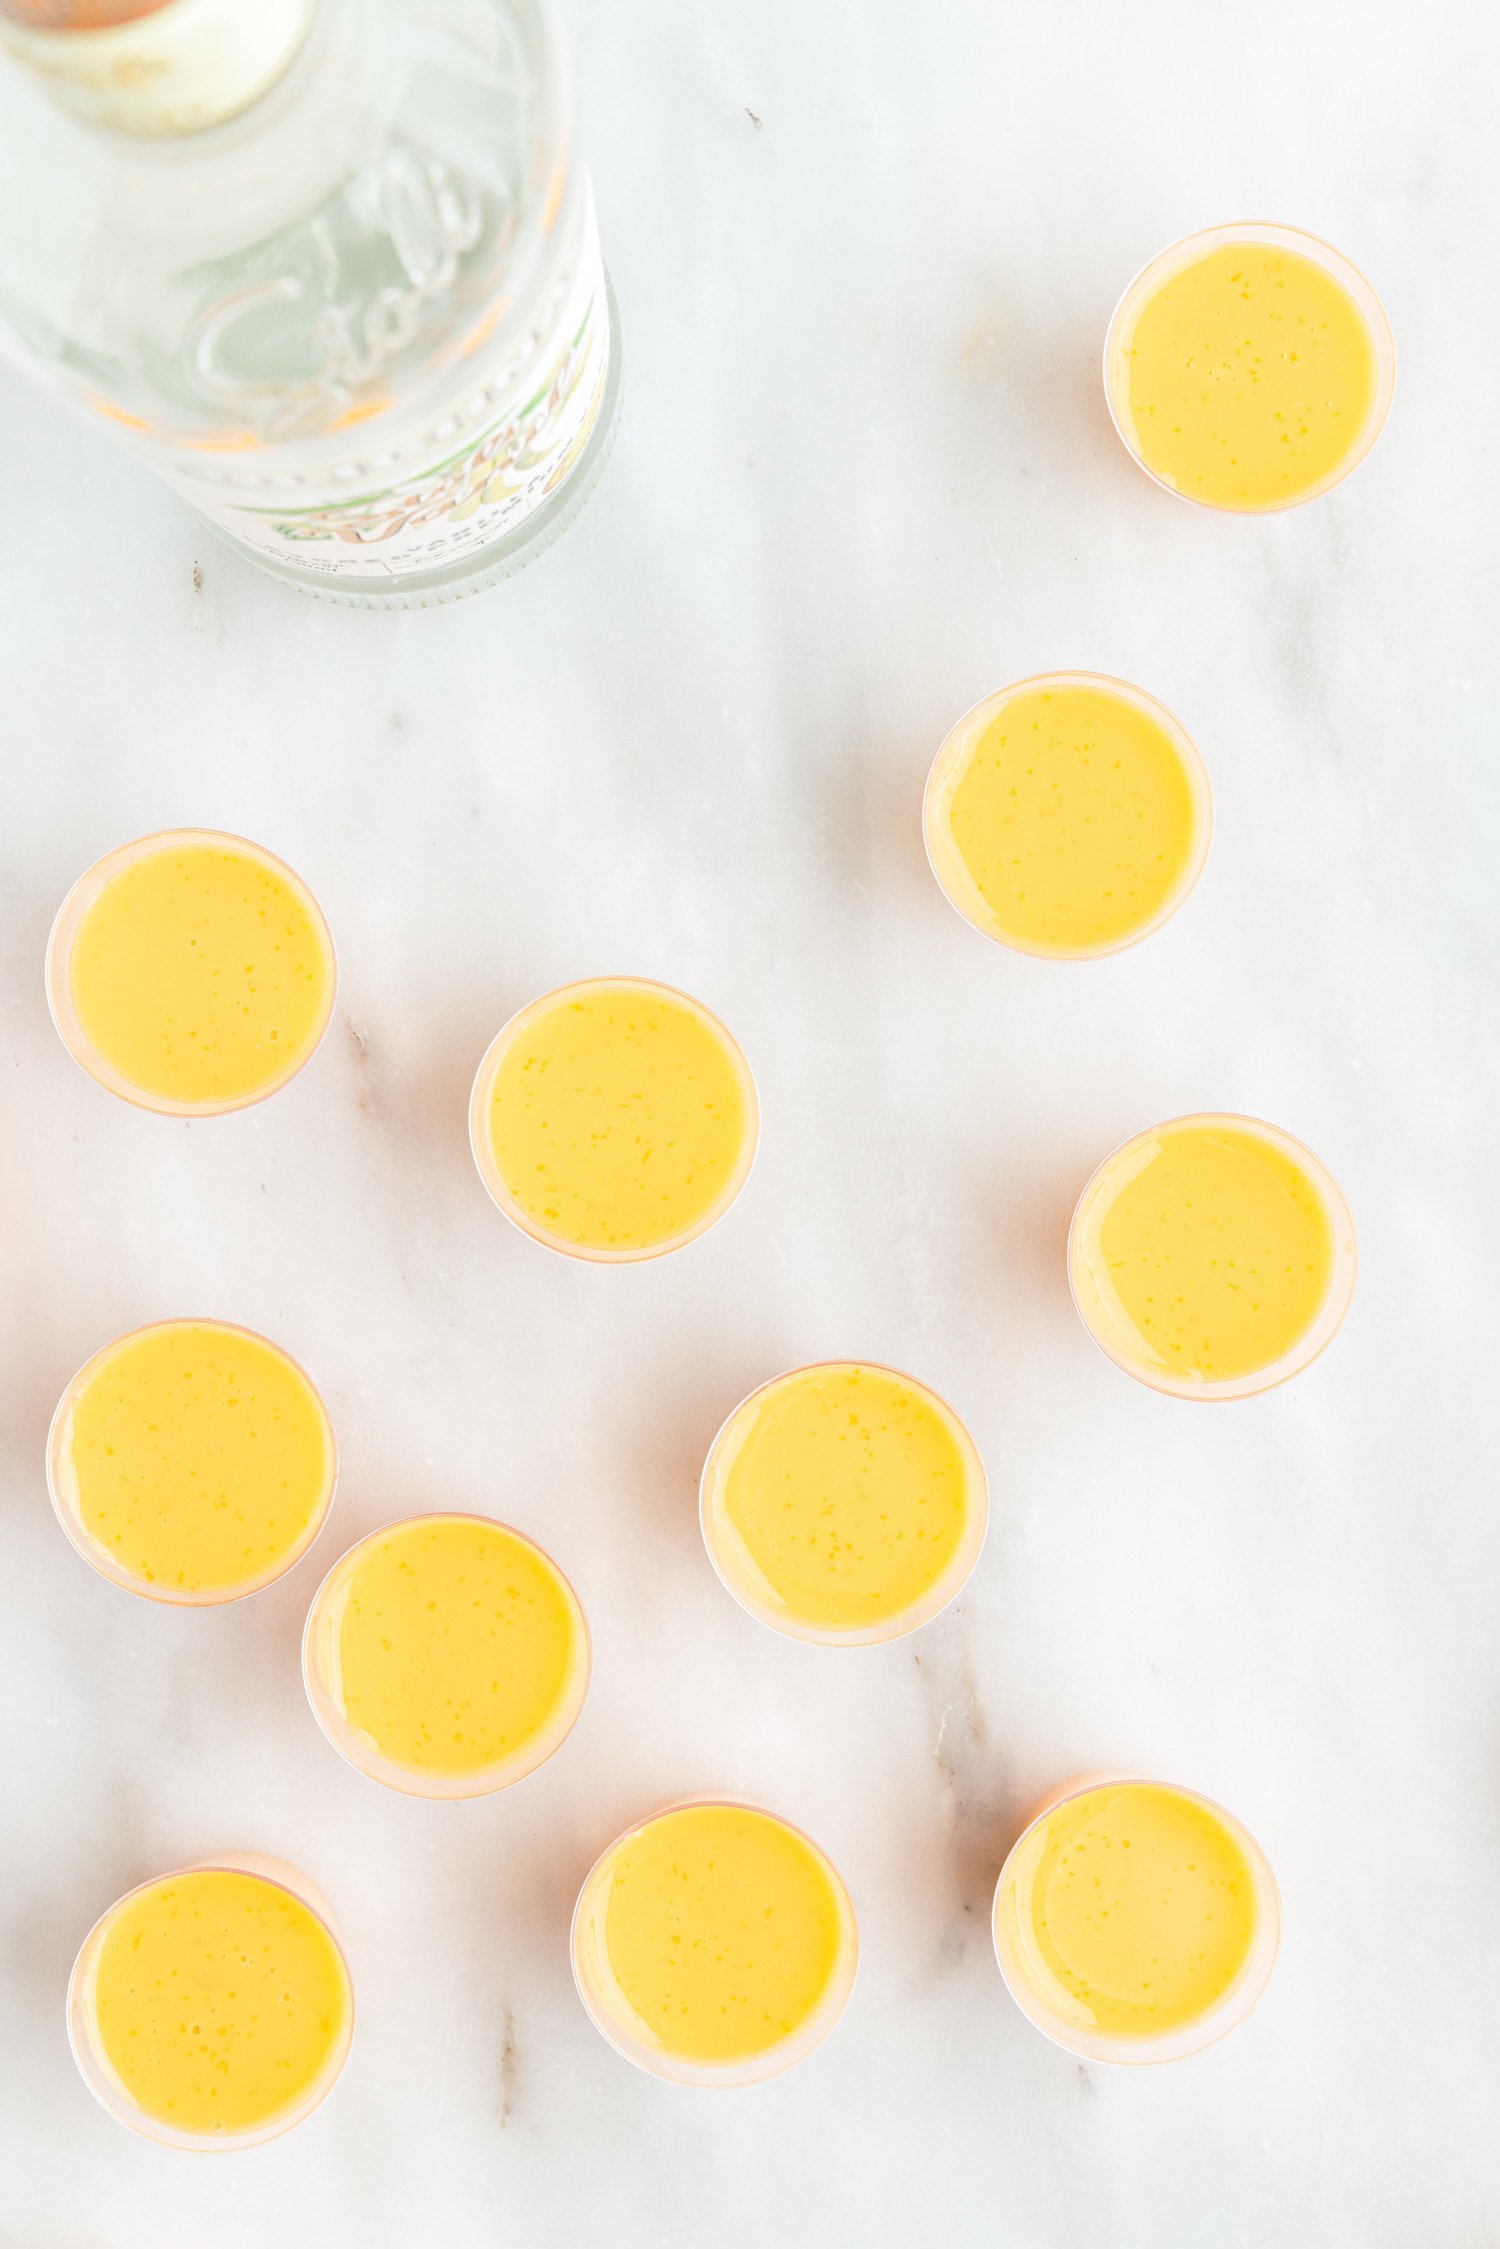 orange jello shots poured into cups